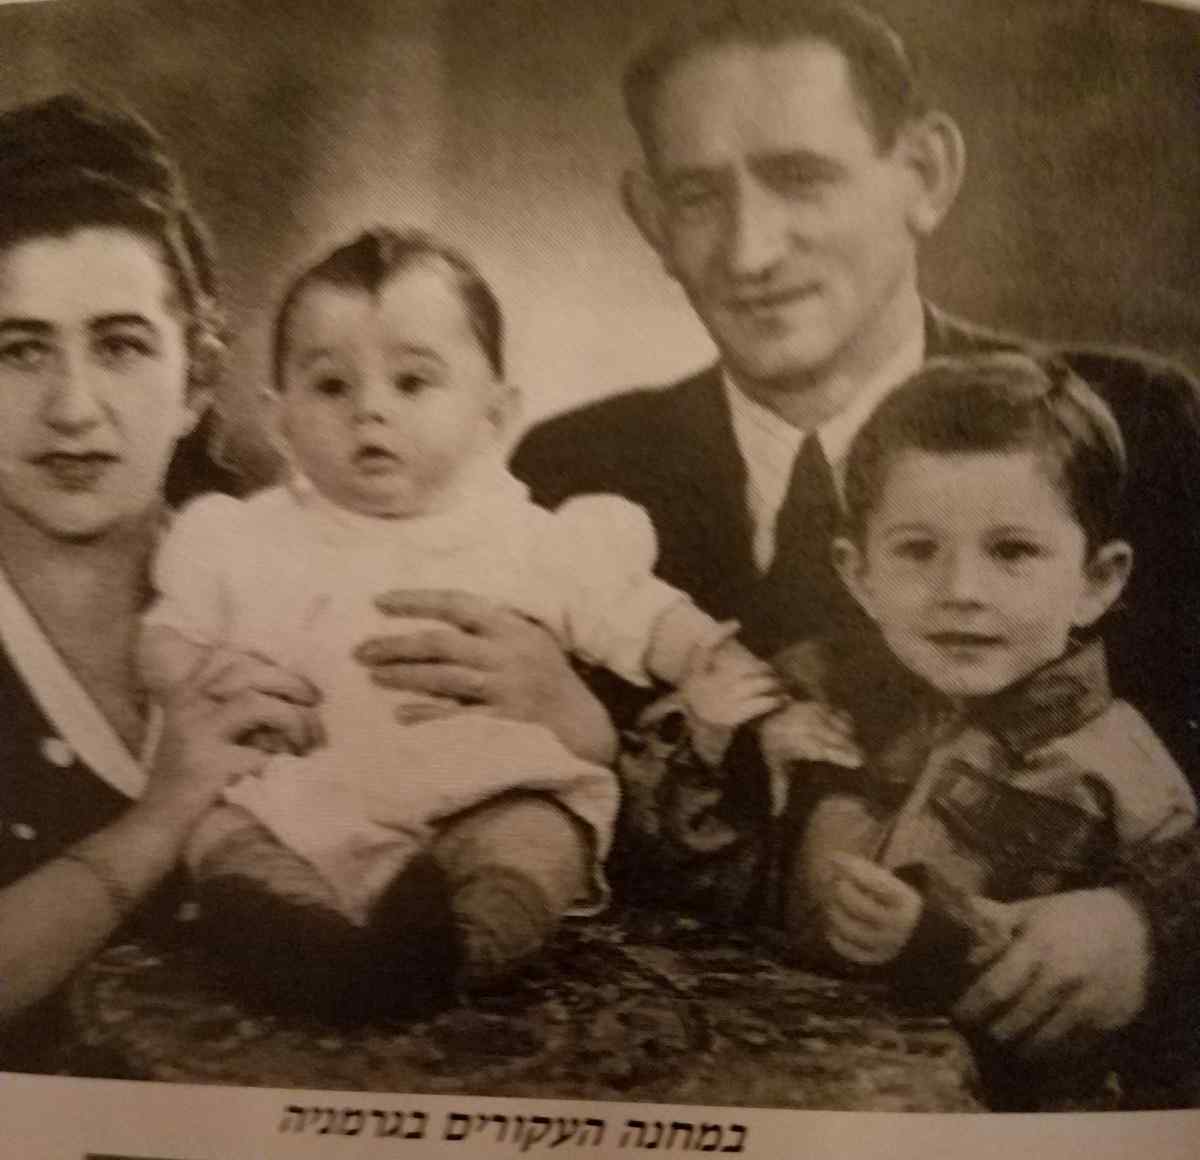 Zahava with her family